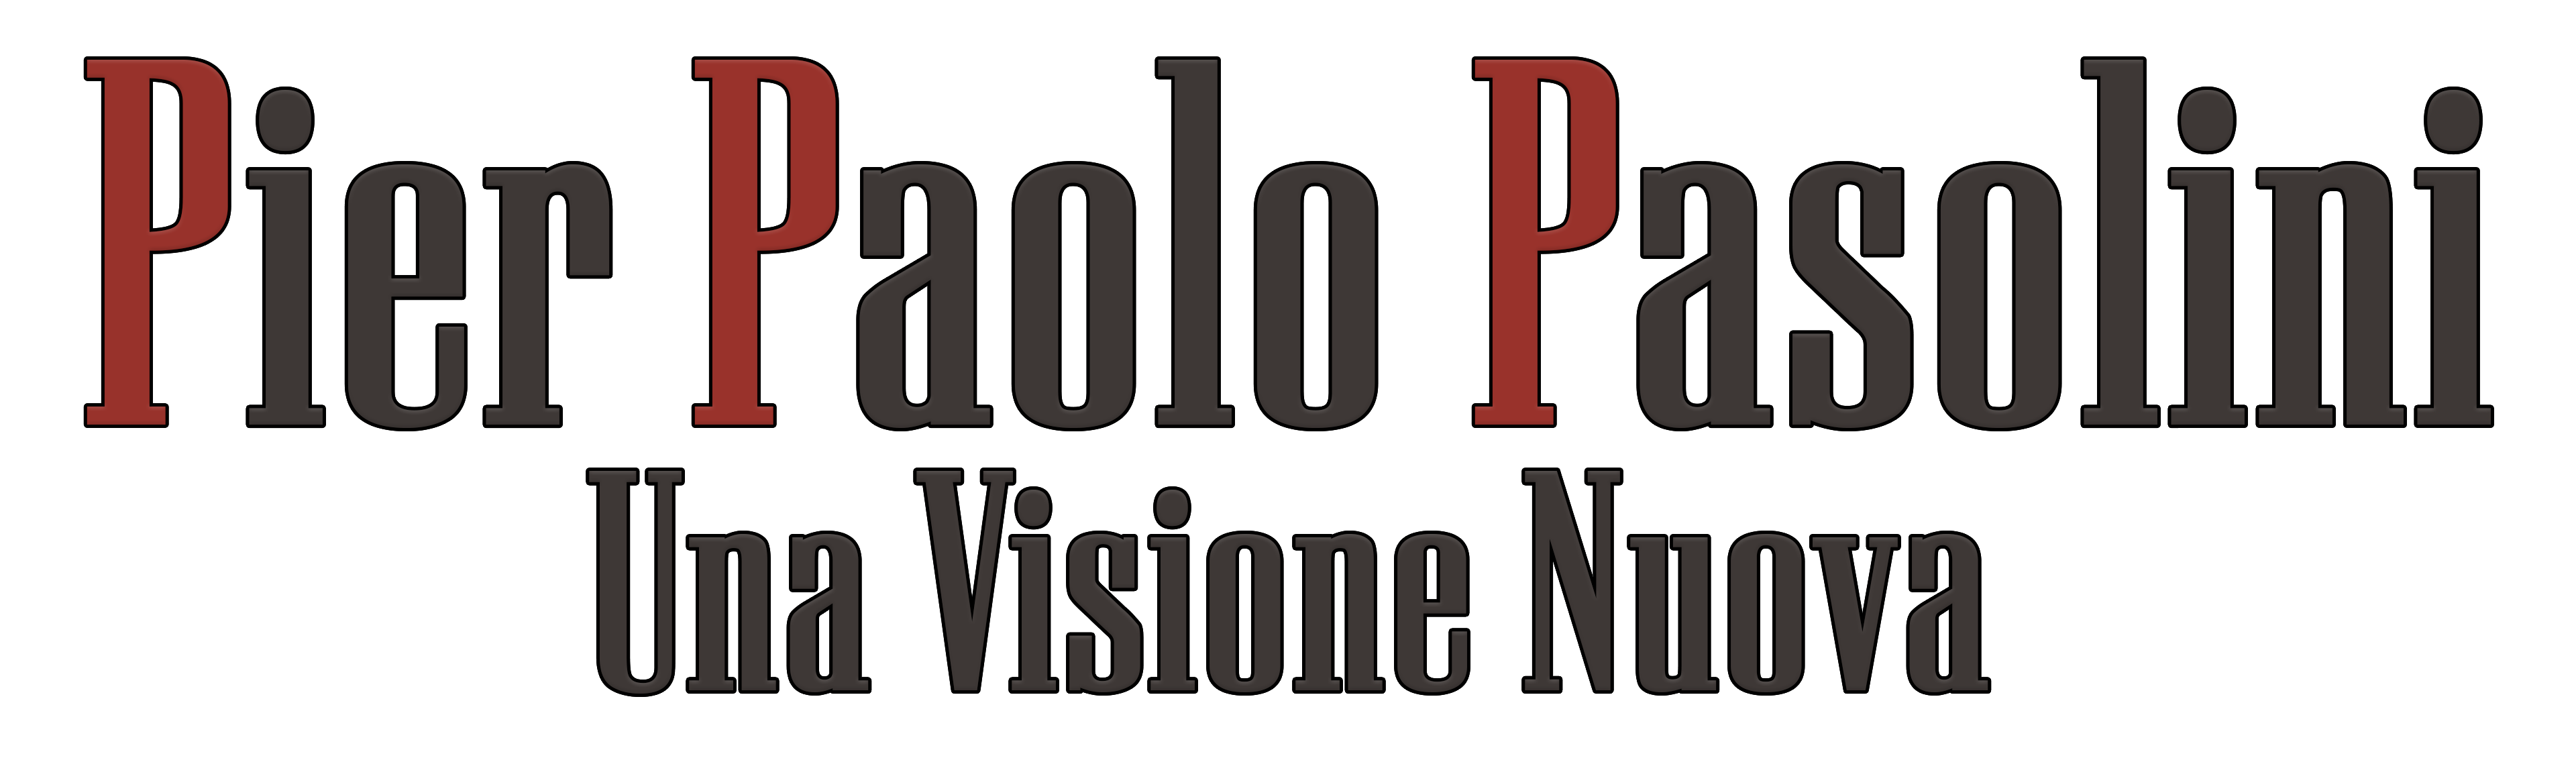 Pier Paolo Pasolini Una Visione Nuova